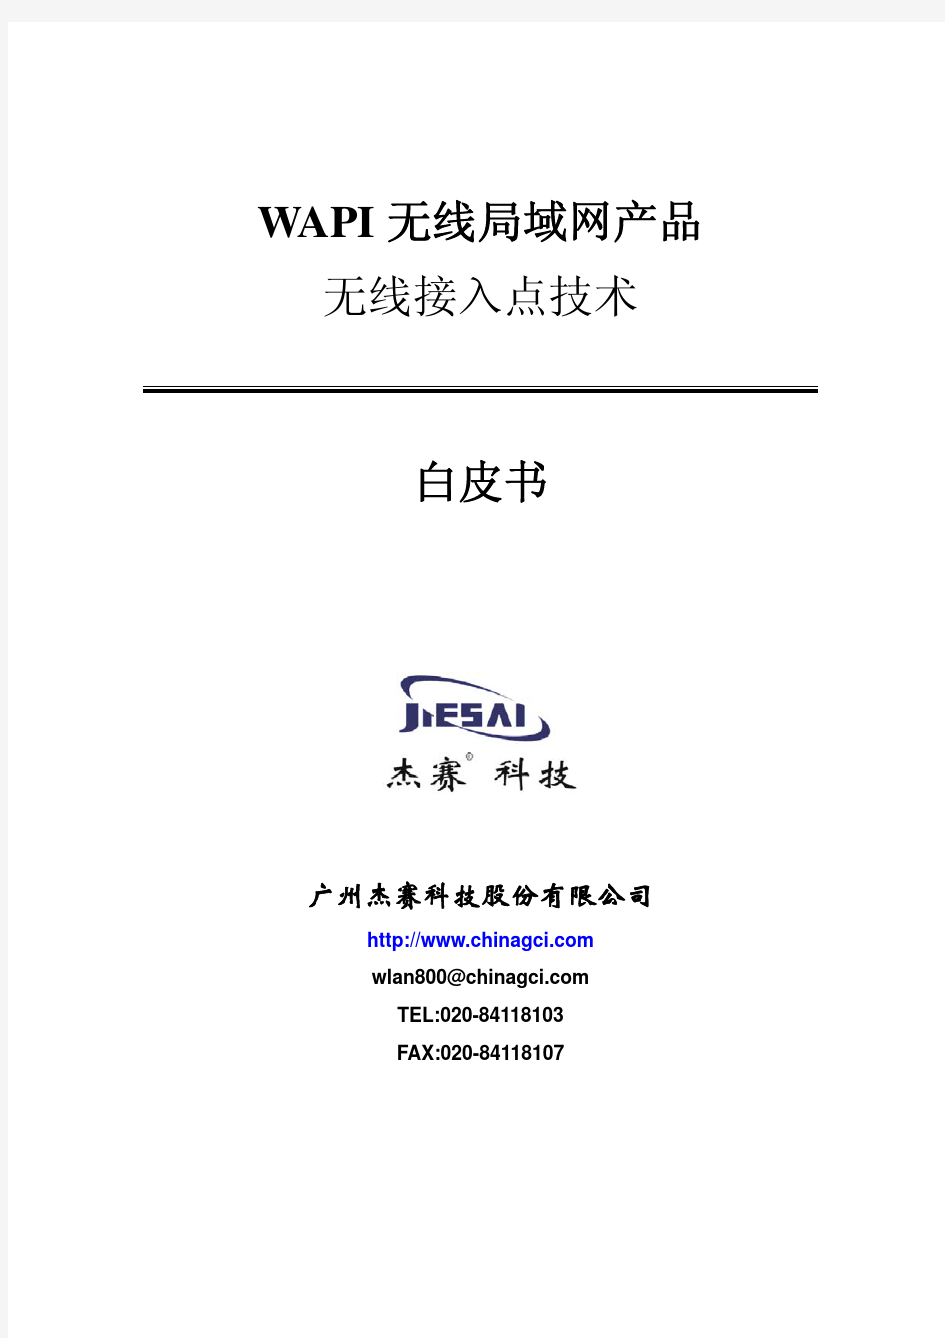 WAPI无线接入点技术白皮书(广州杰赛科技股份有限公司)